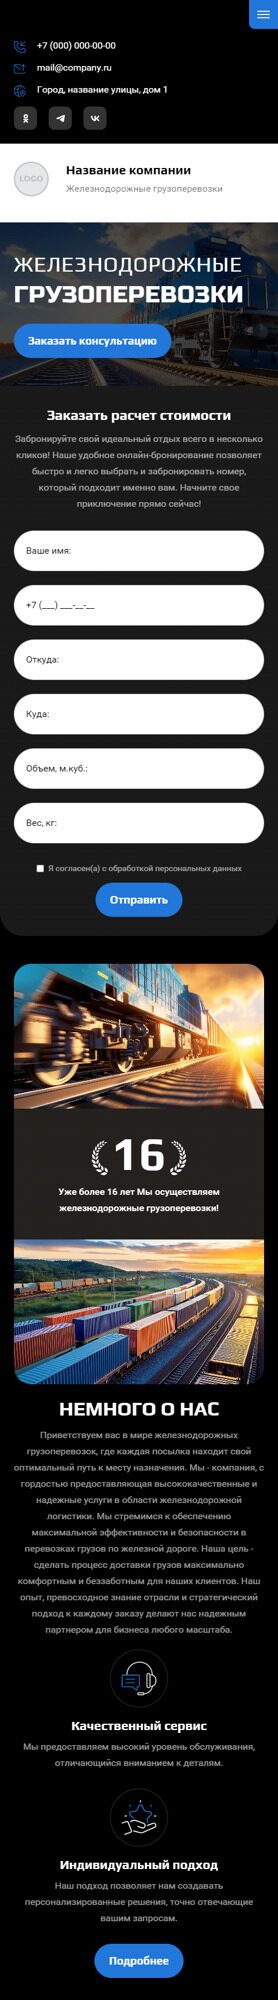 Готовый Сайт-Бизнес № 5803920 - Железнодорожные грузоперевозки (Мобильная версия)